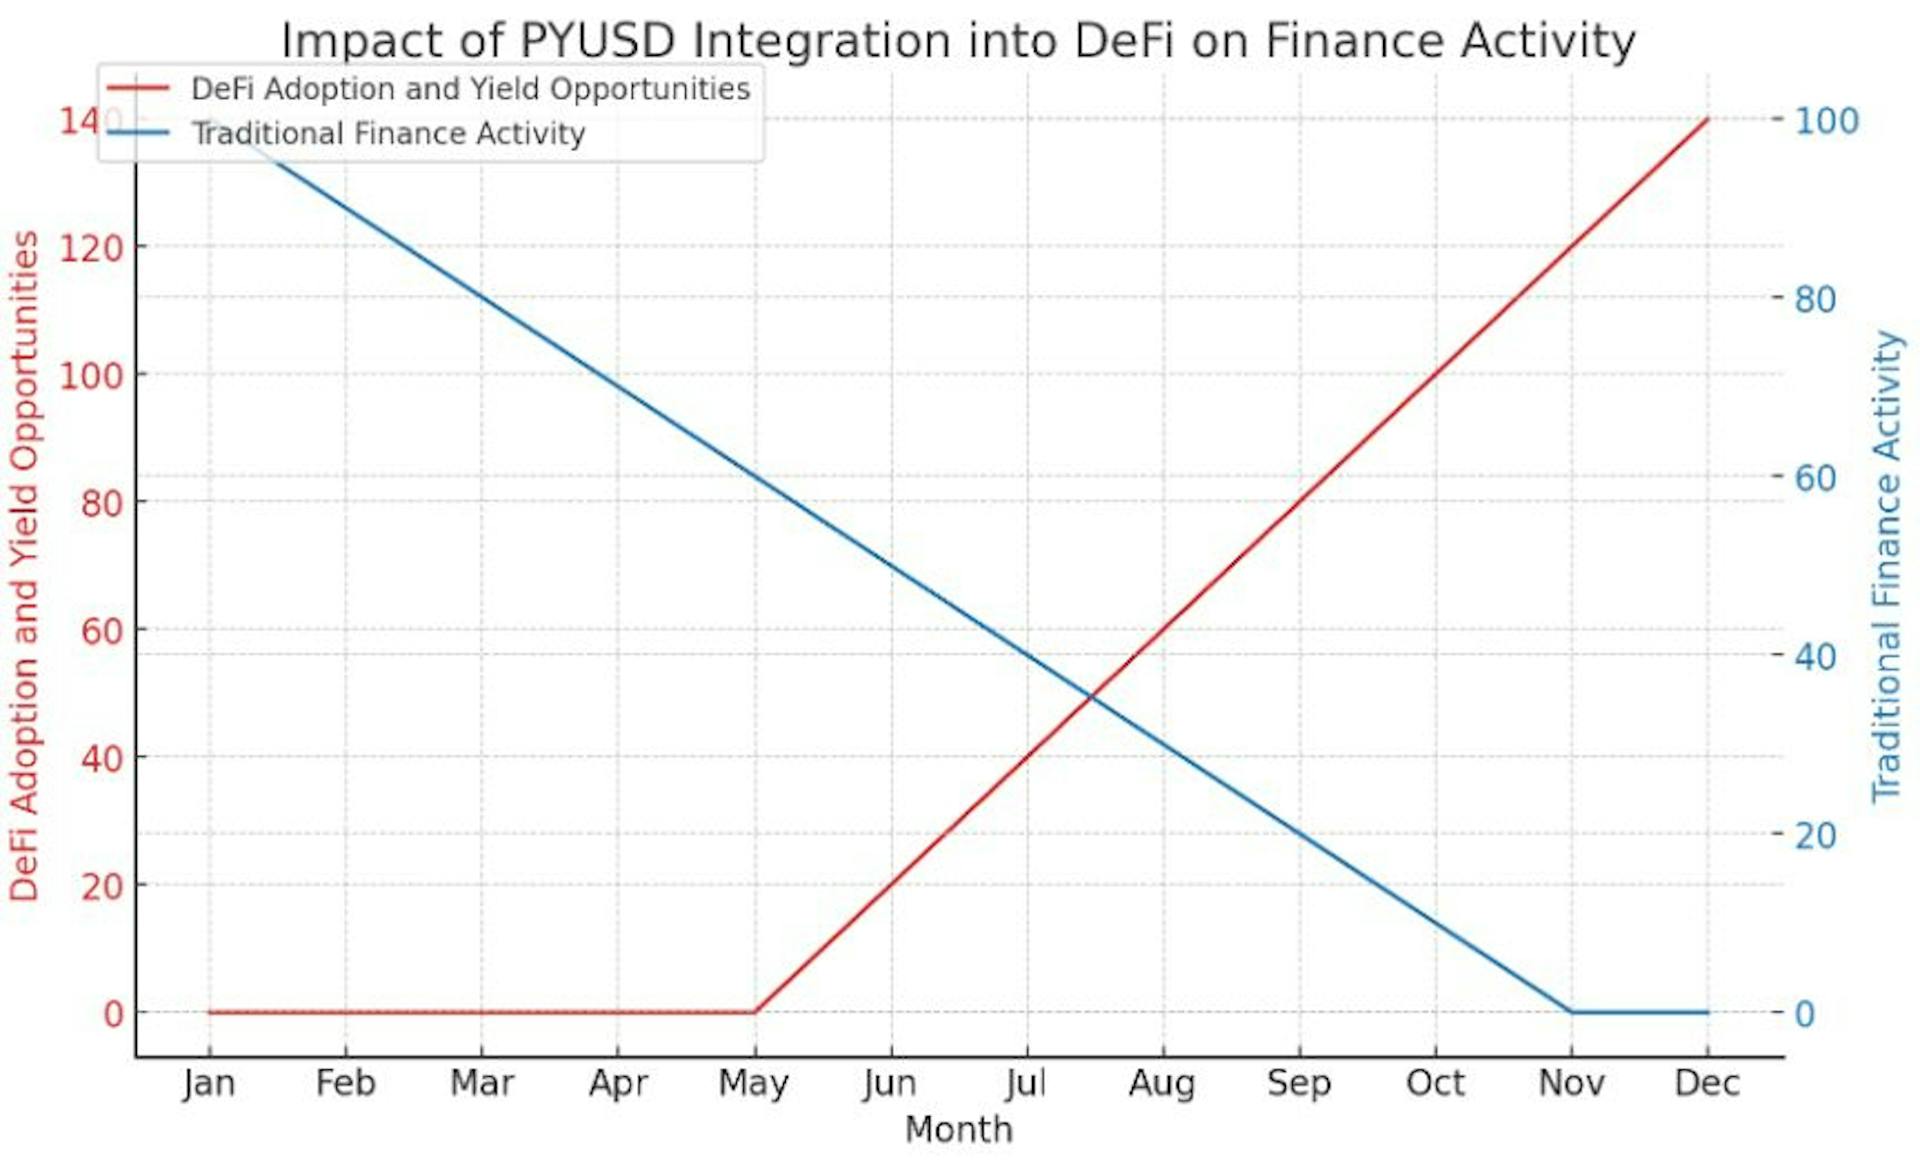 Das Diagramm veranschaulicht die hypothetischen Auswirkungen der Integration von PYUSD in das DeFi-Ökosystem und zeigt einen deutlichen Anstieg der DeFi-Einführung und der Ertragsmöglichkeiten im Laufe der Zeit.